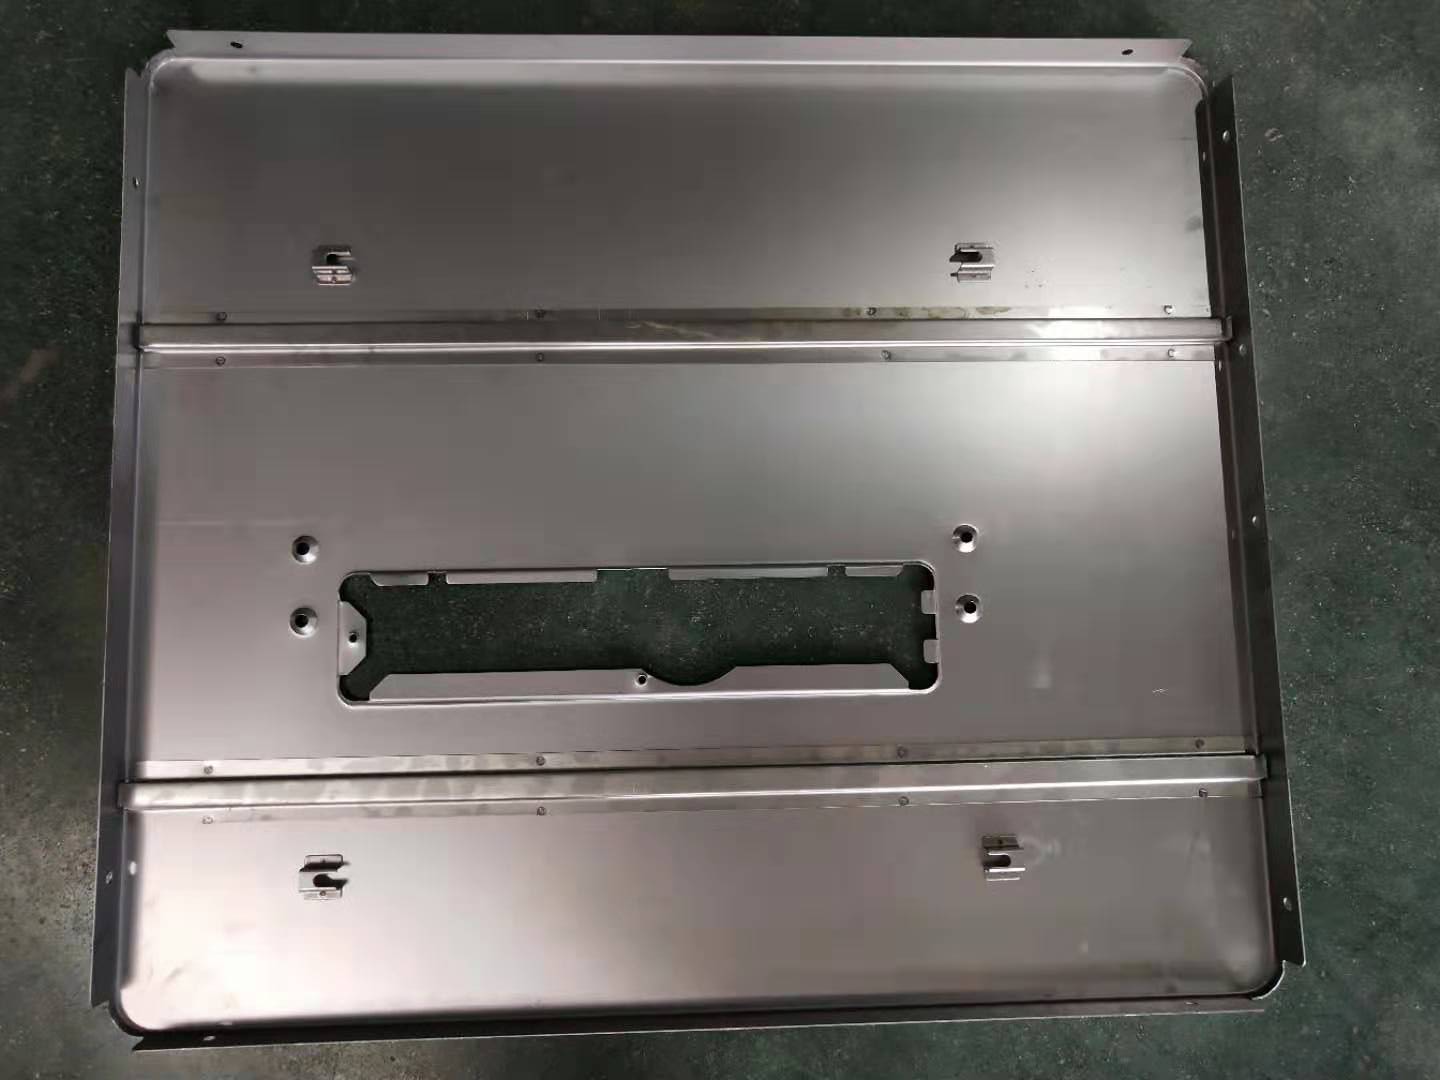 Stiffener spot welding uye lug convex welding